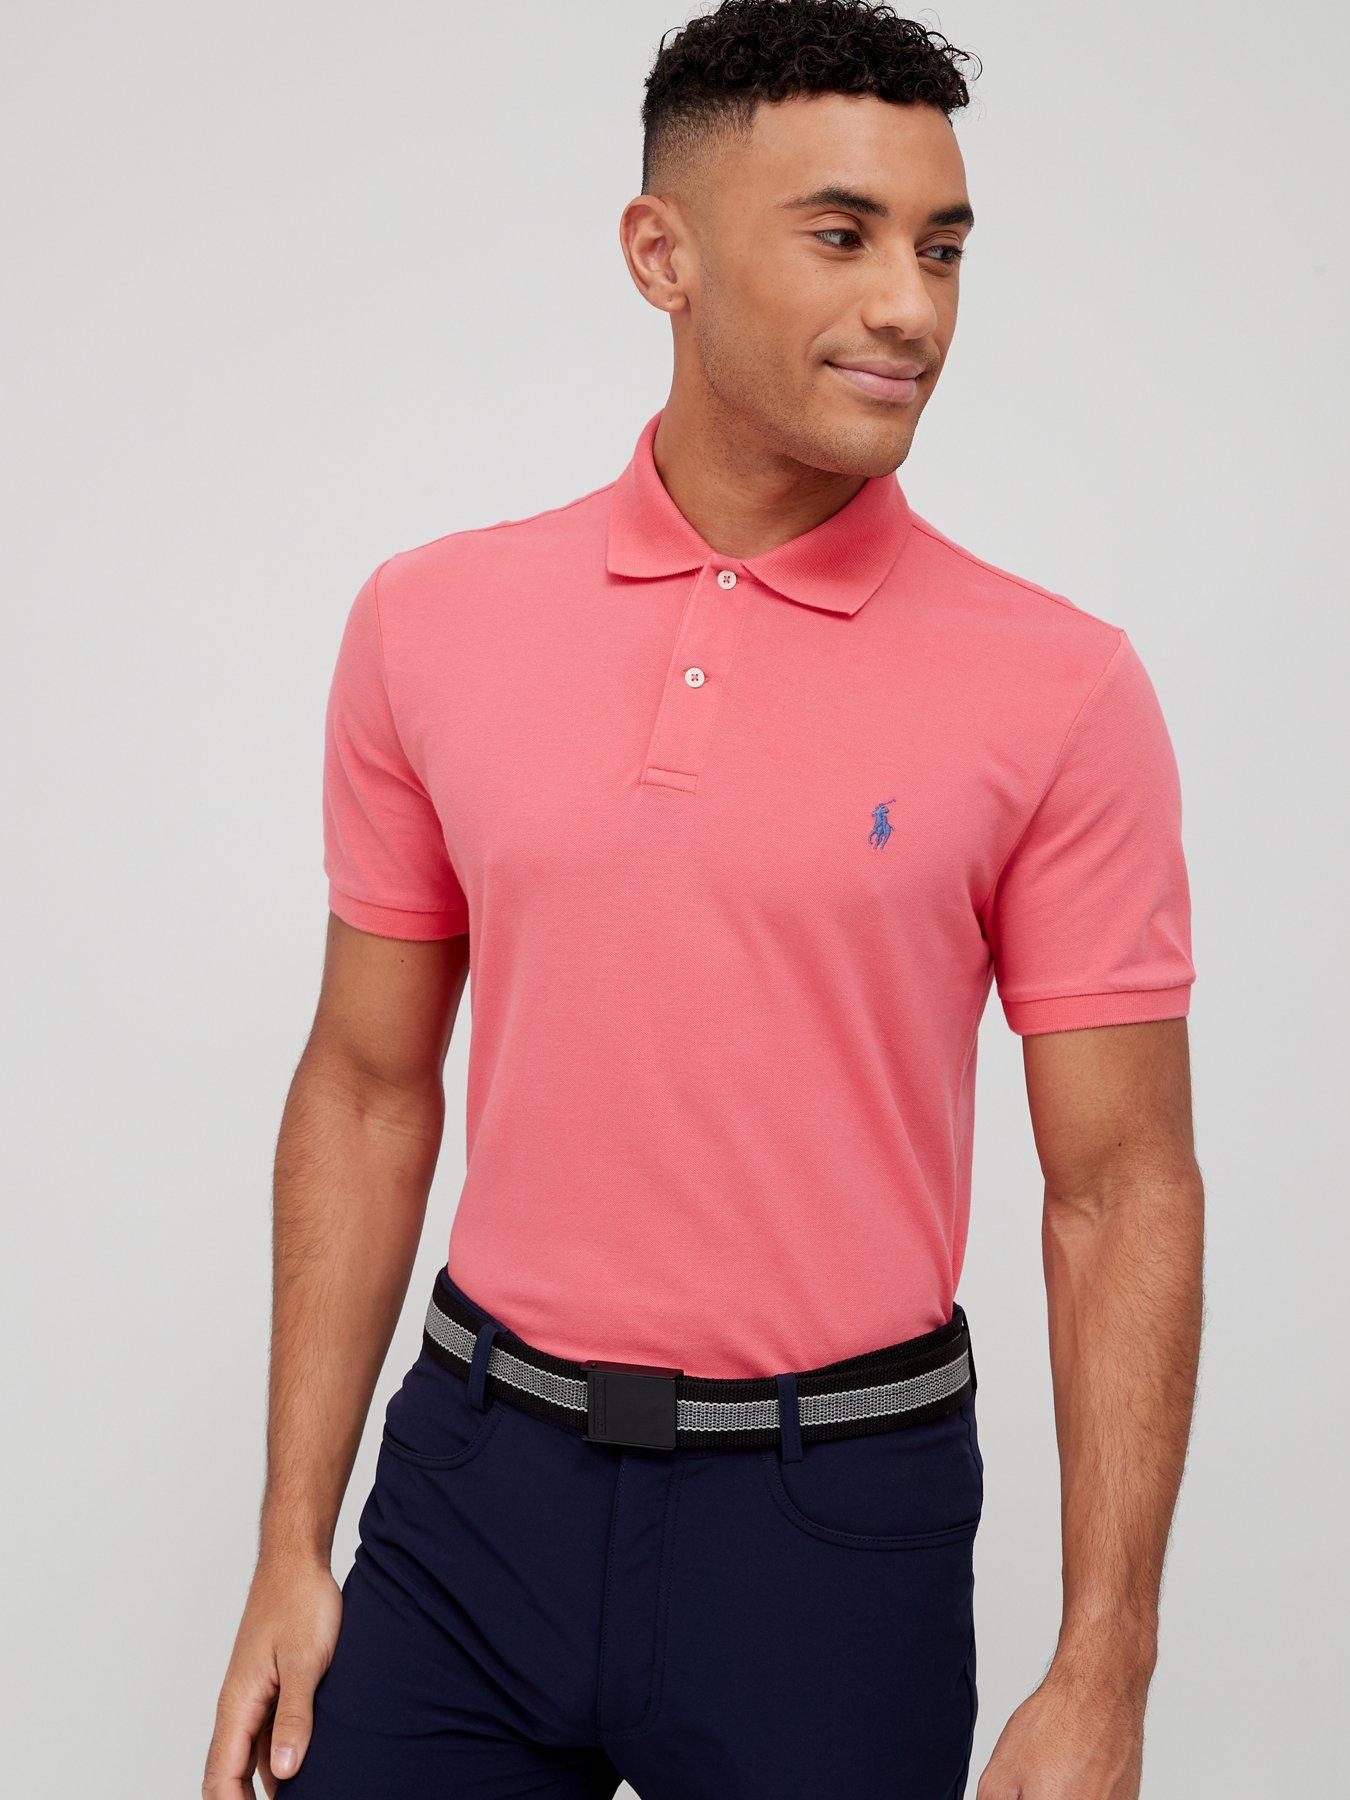 Ralph Lauren Golf Short Sleeve Short Sleeve Polo Shirt - Pink 